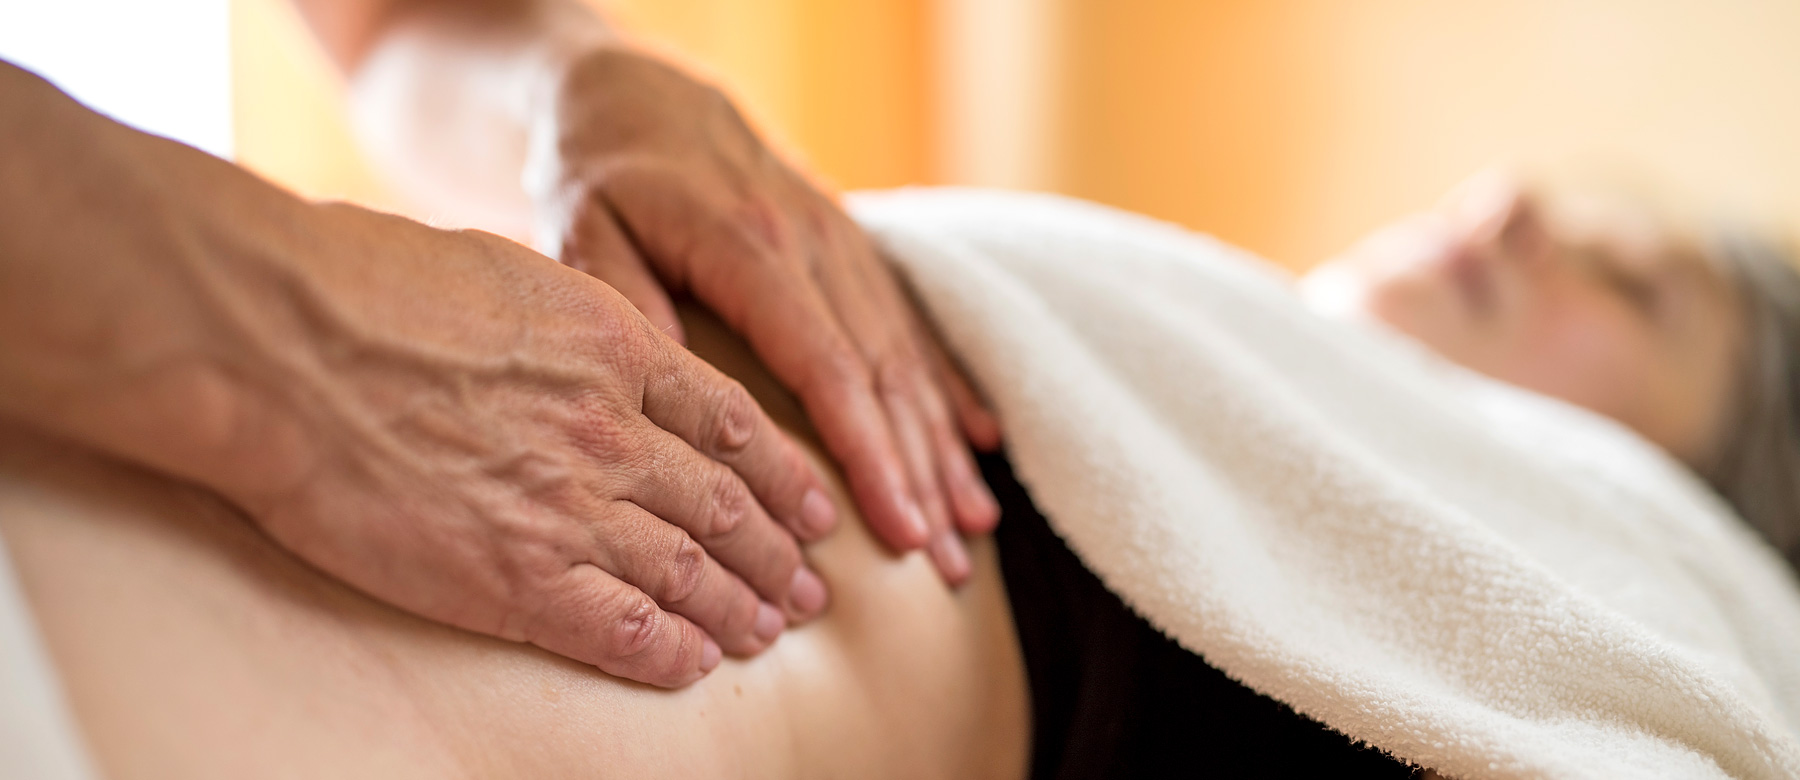 Patientin erhält ryhtmische Massage am Bauch.